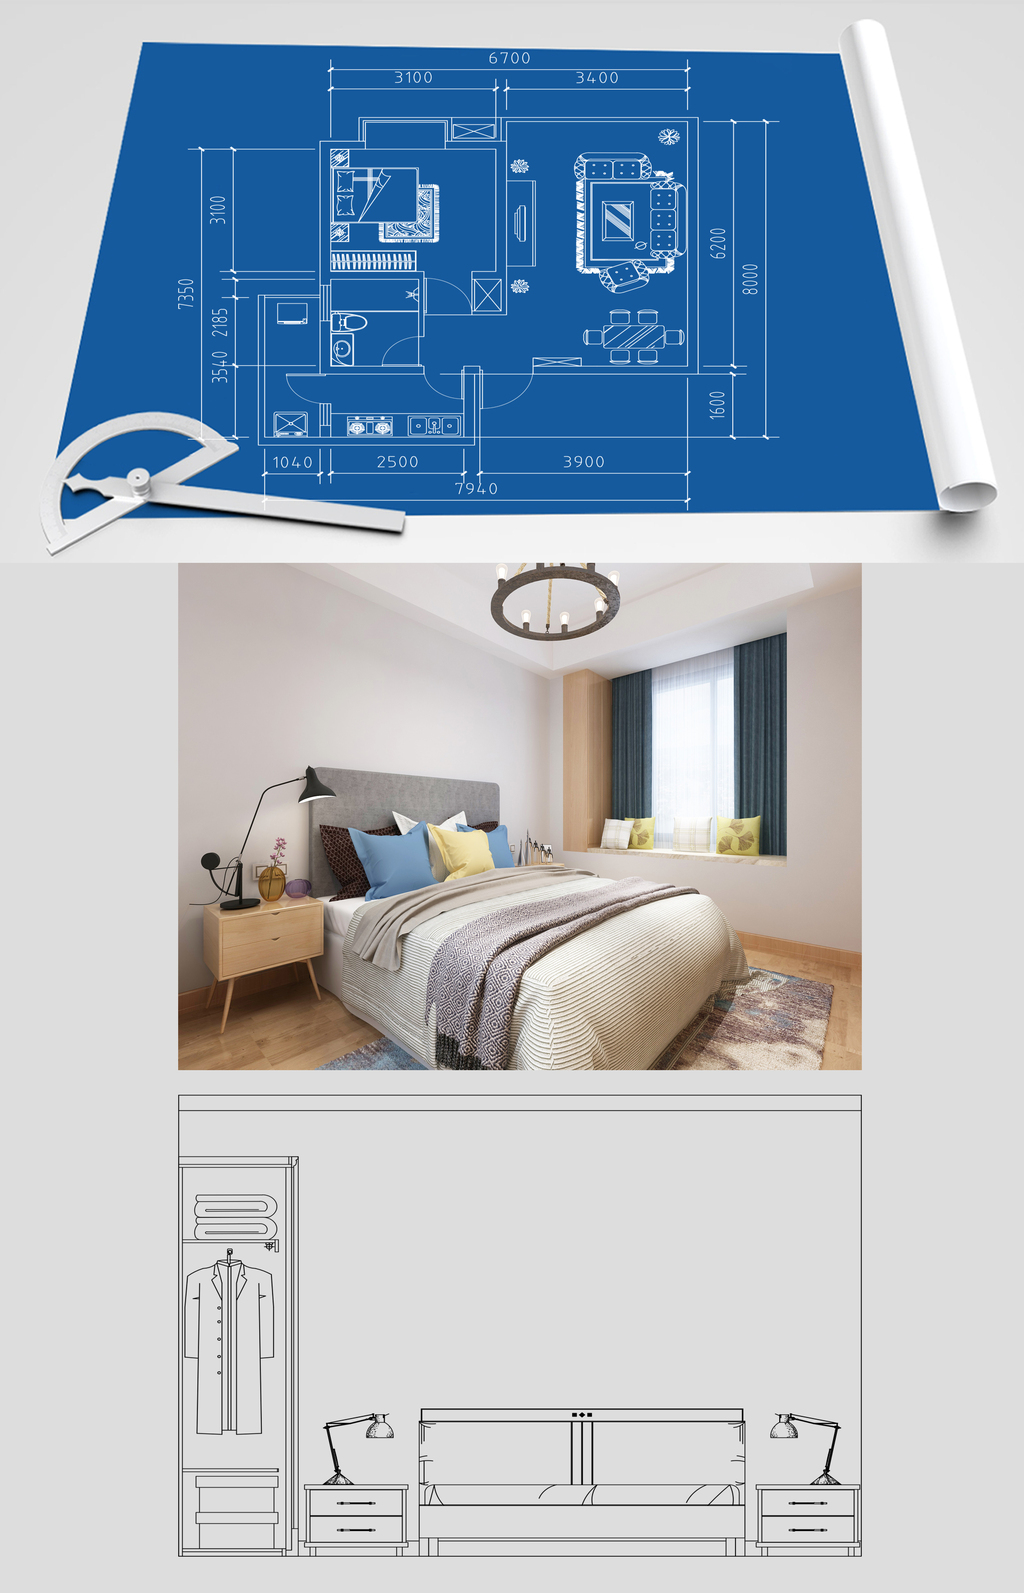 民宿设计案例平面图效果图 - 总平面图设计图 - 实验室设备网